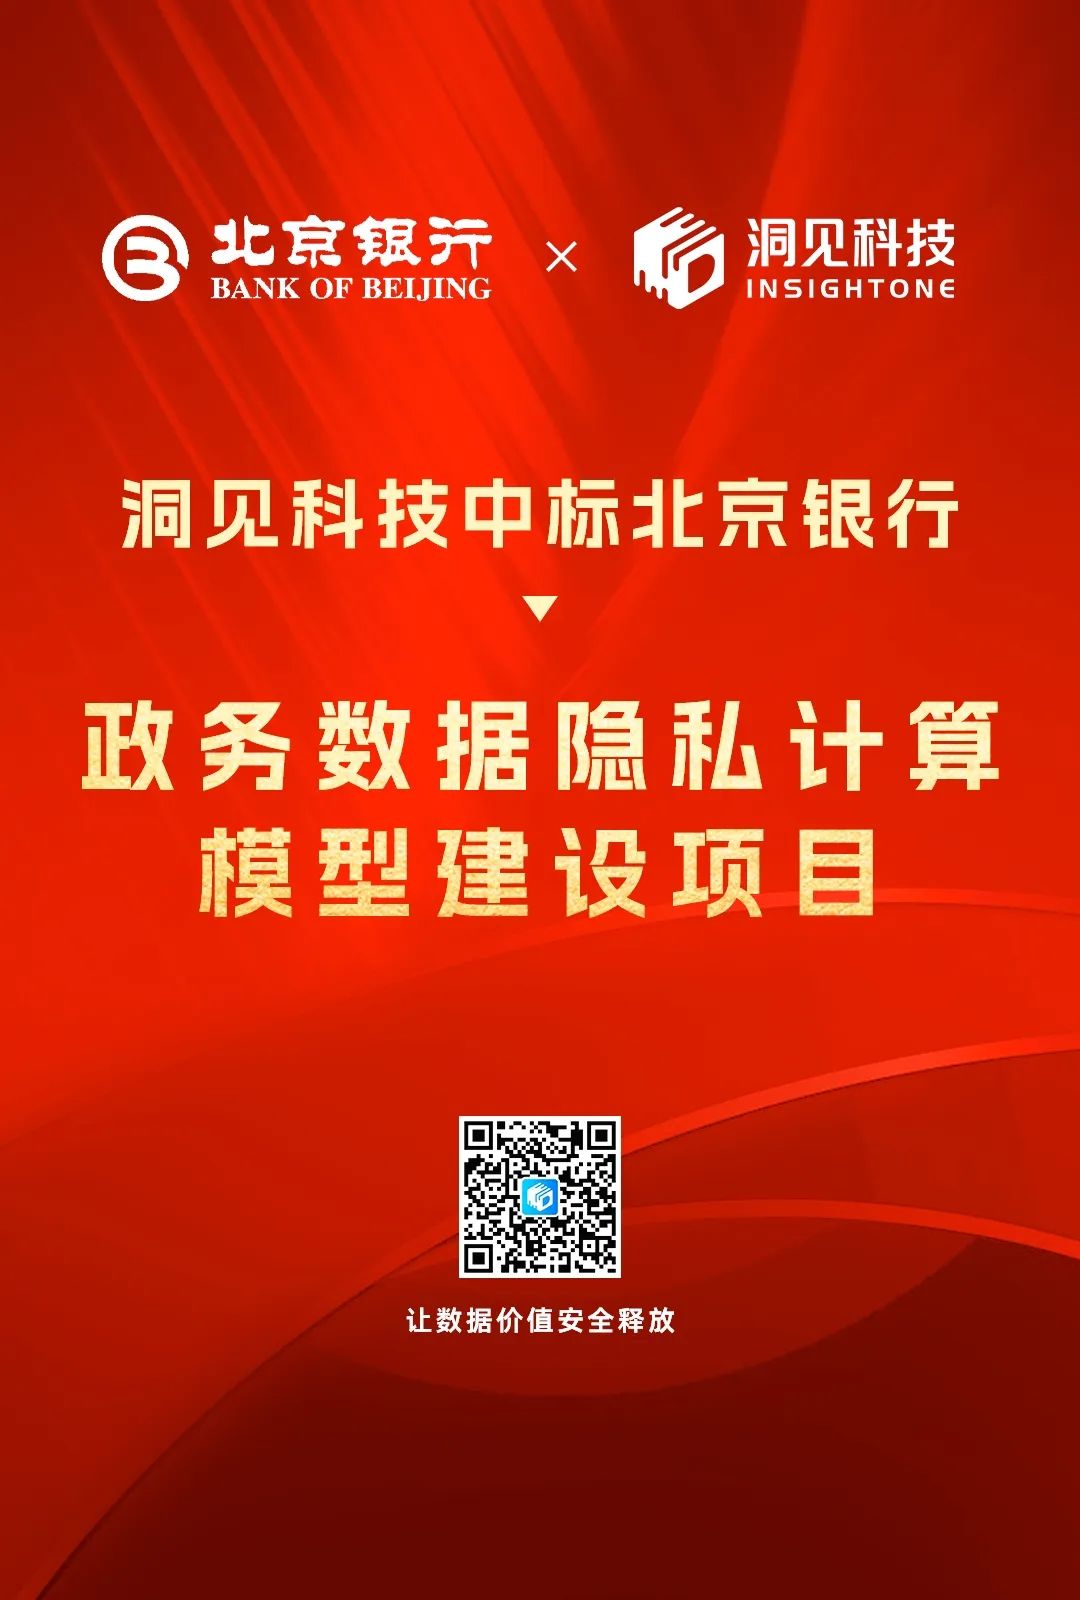 洞见科技中标北京银行「政务数据隐私计算模型建设」项目